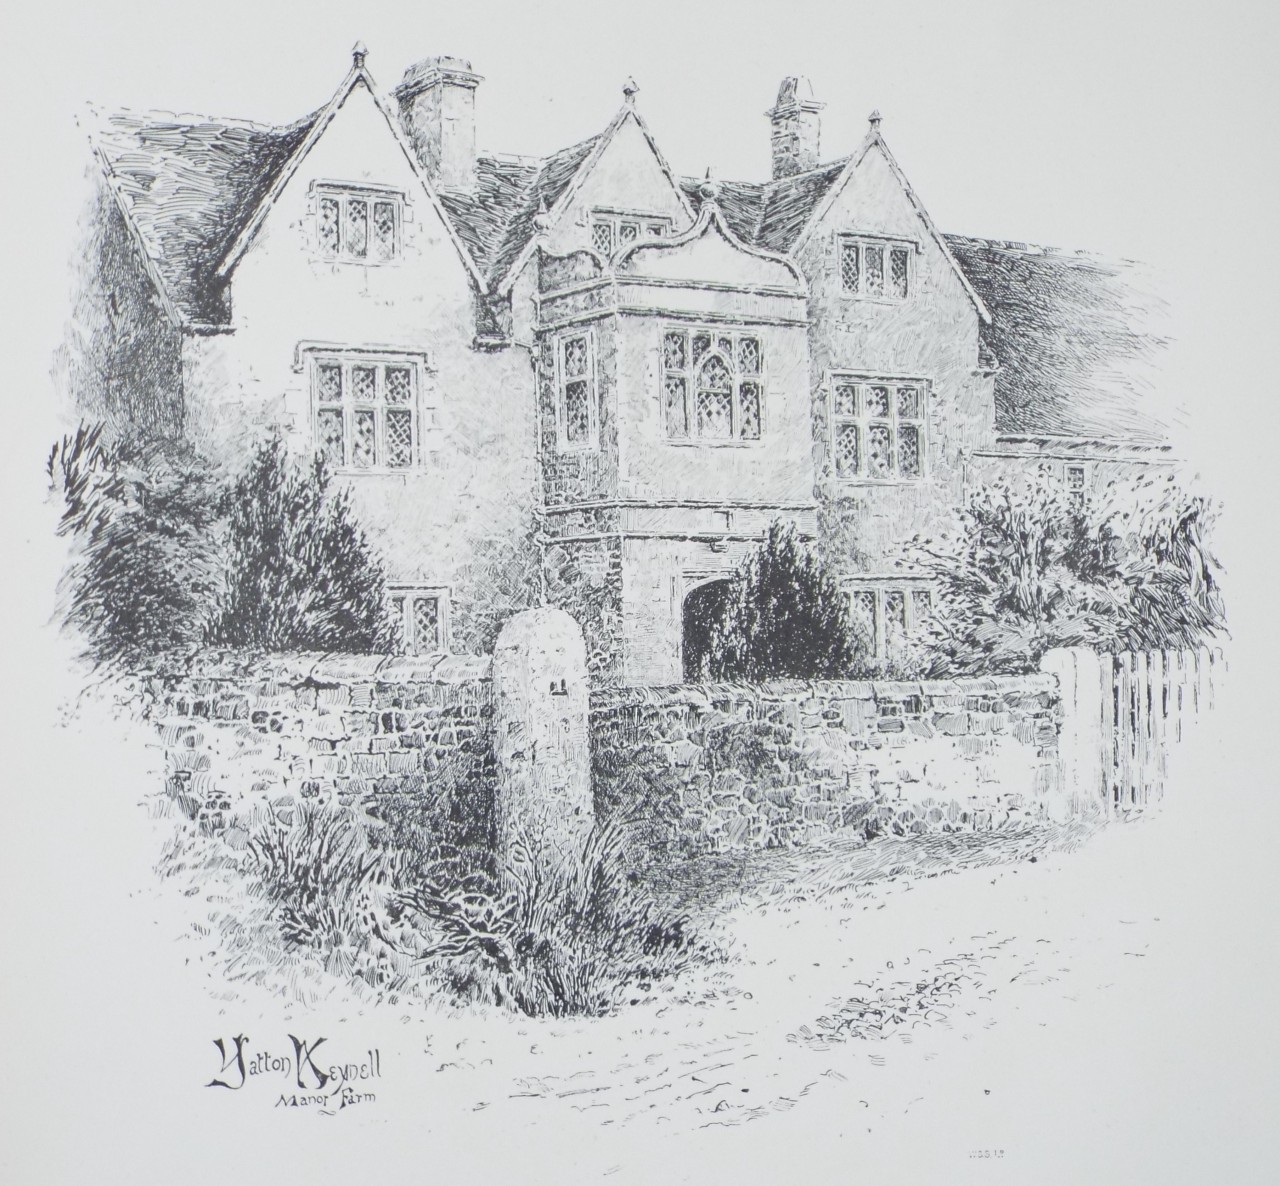 Lithograph - Yatton Keynell Manor Farm